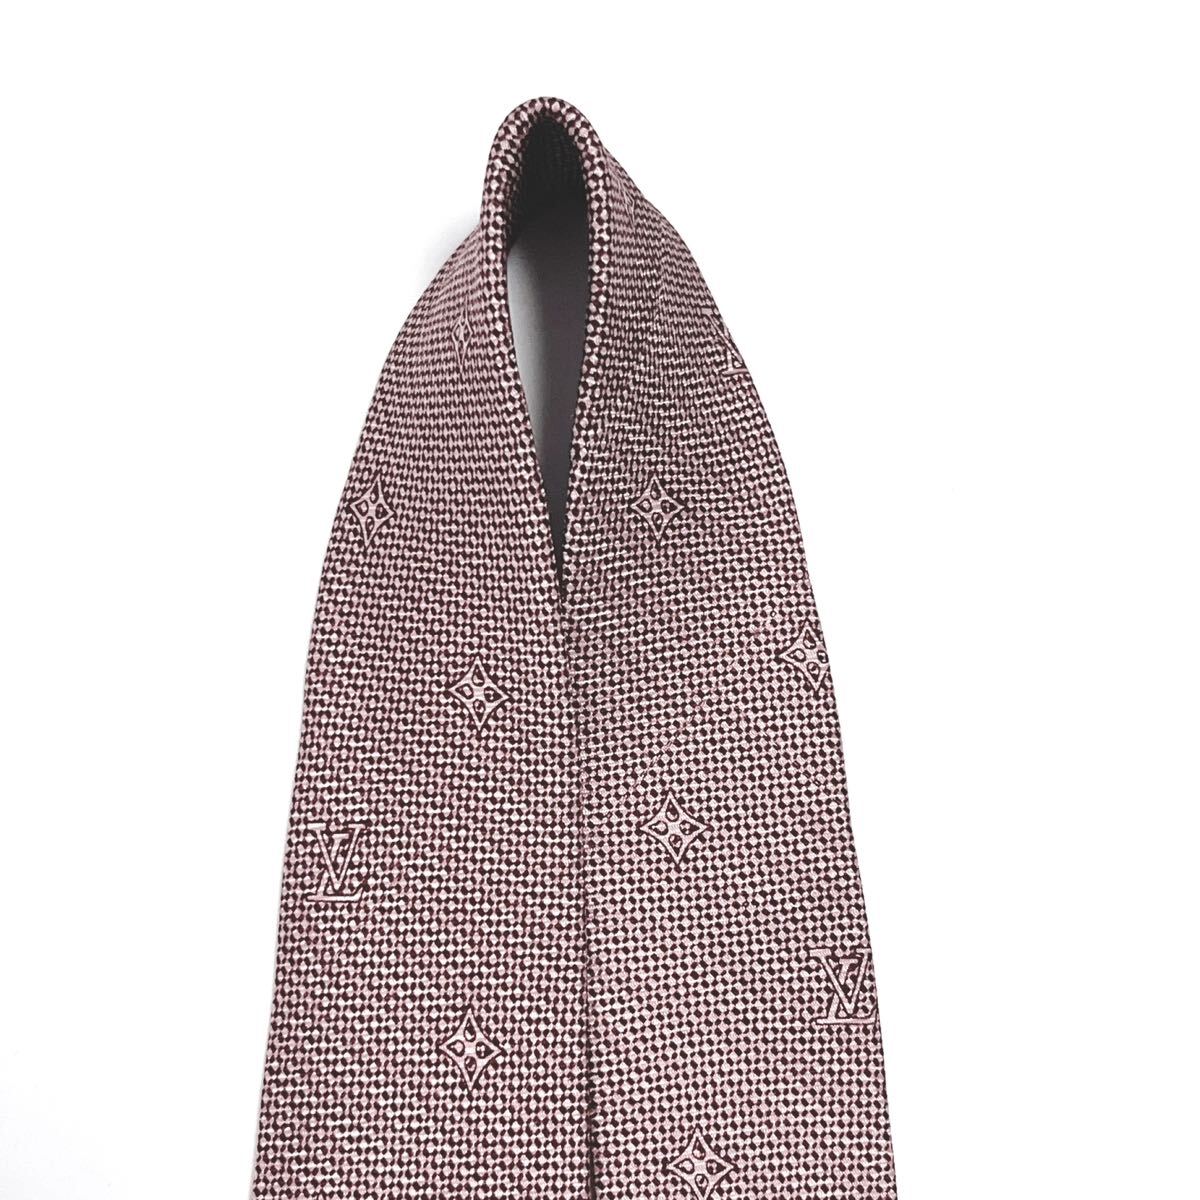 LOUIS VUITTON Vuitton прекрасный товар галстук высший класс шелк монограмма 